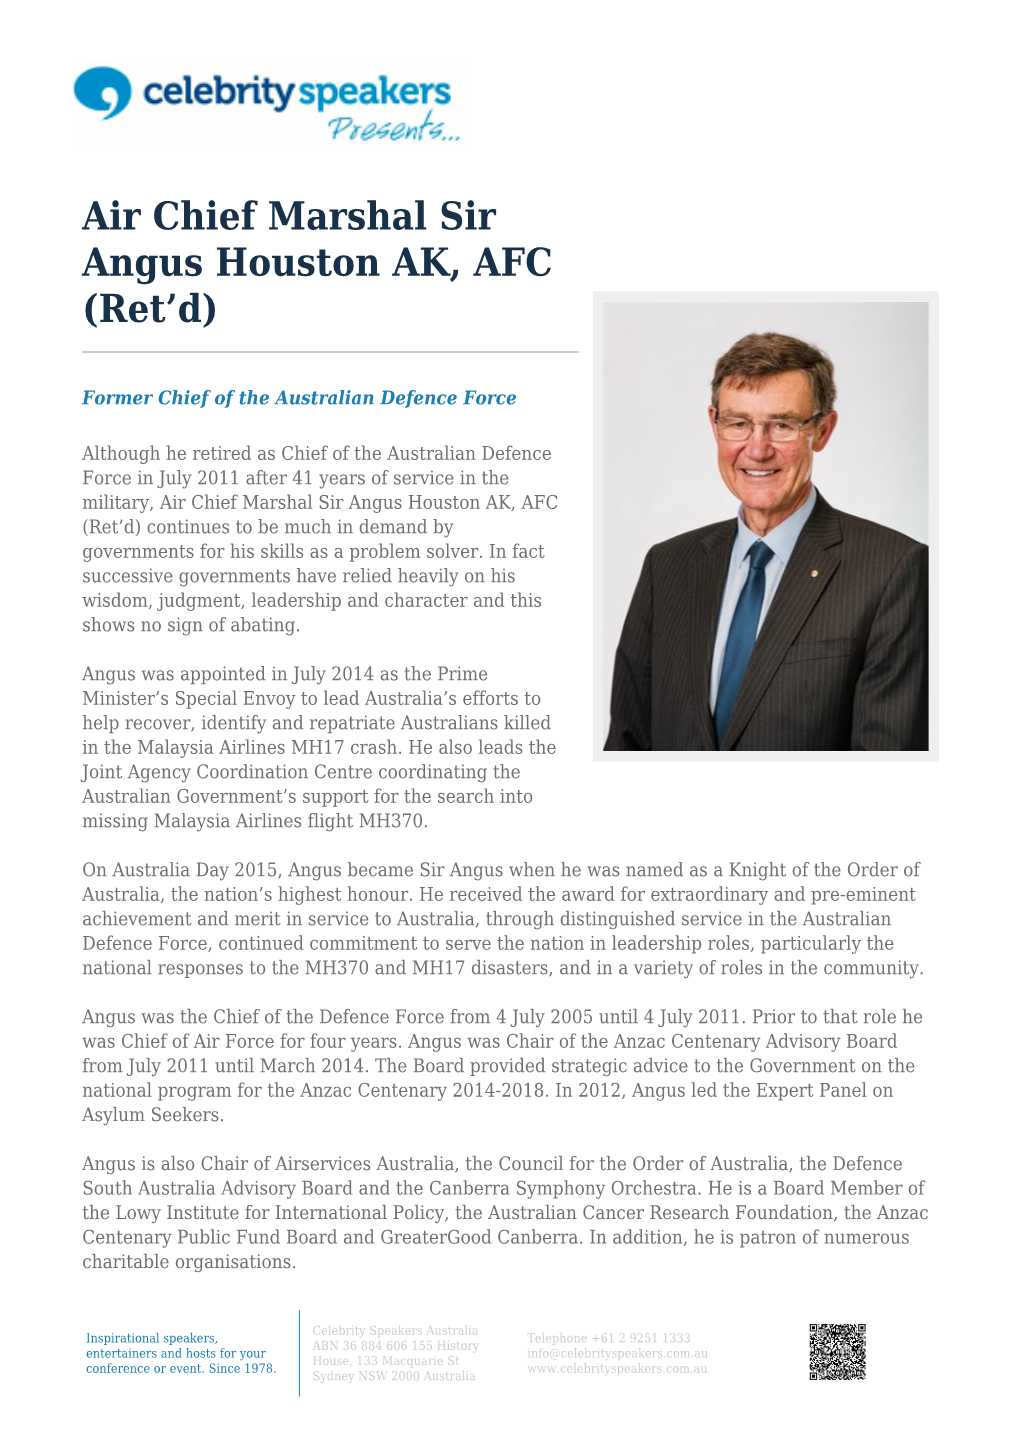 Air Chief Marshal Sir Angus Houston AK, AFC (Ret’D)